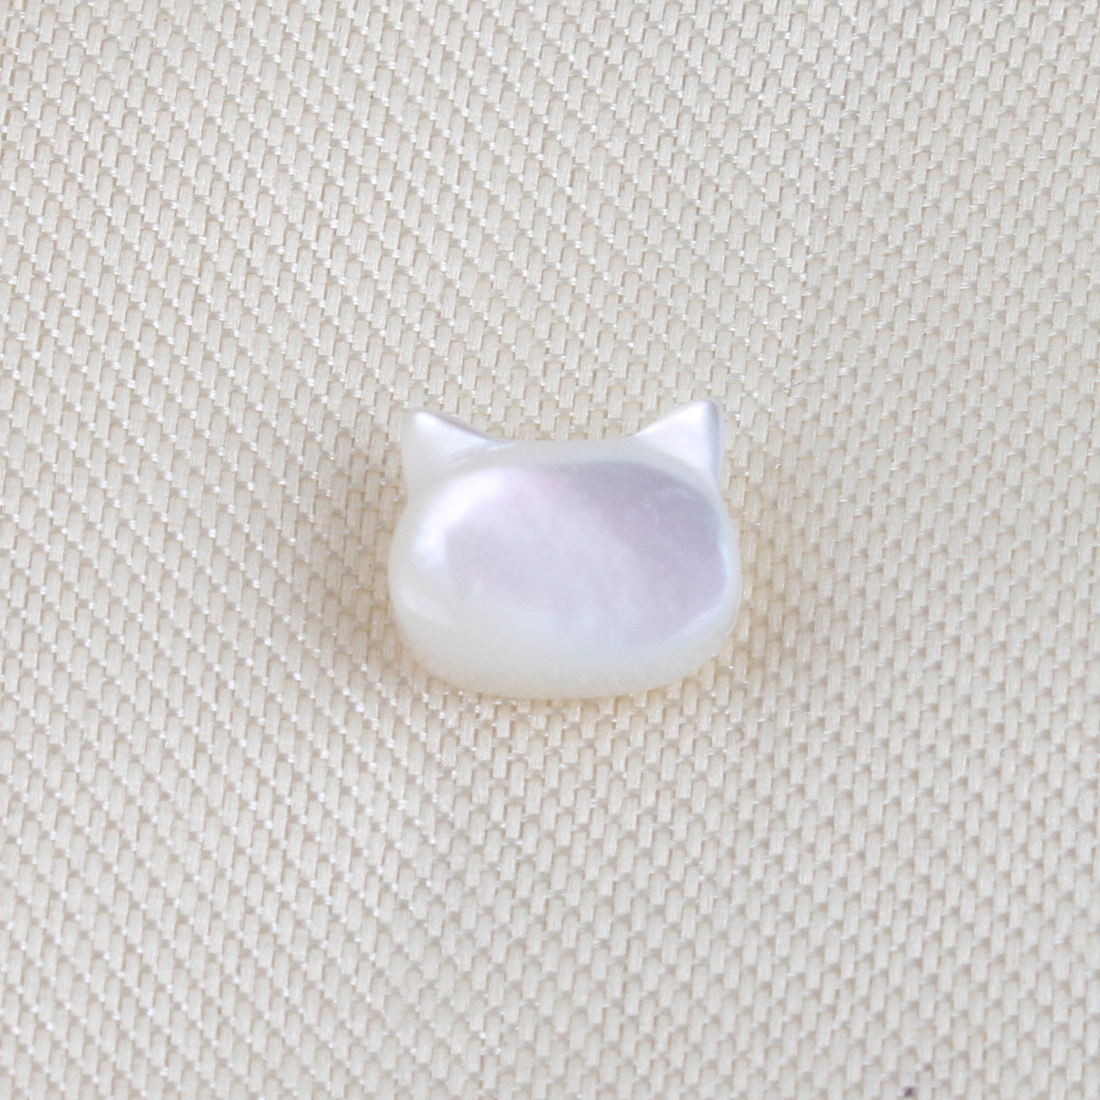 1:white shell